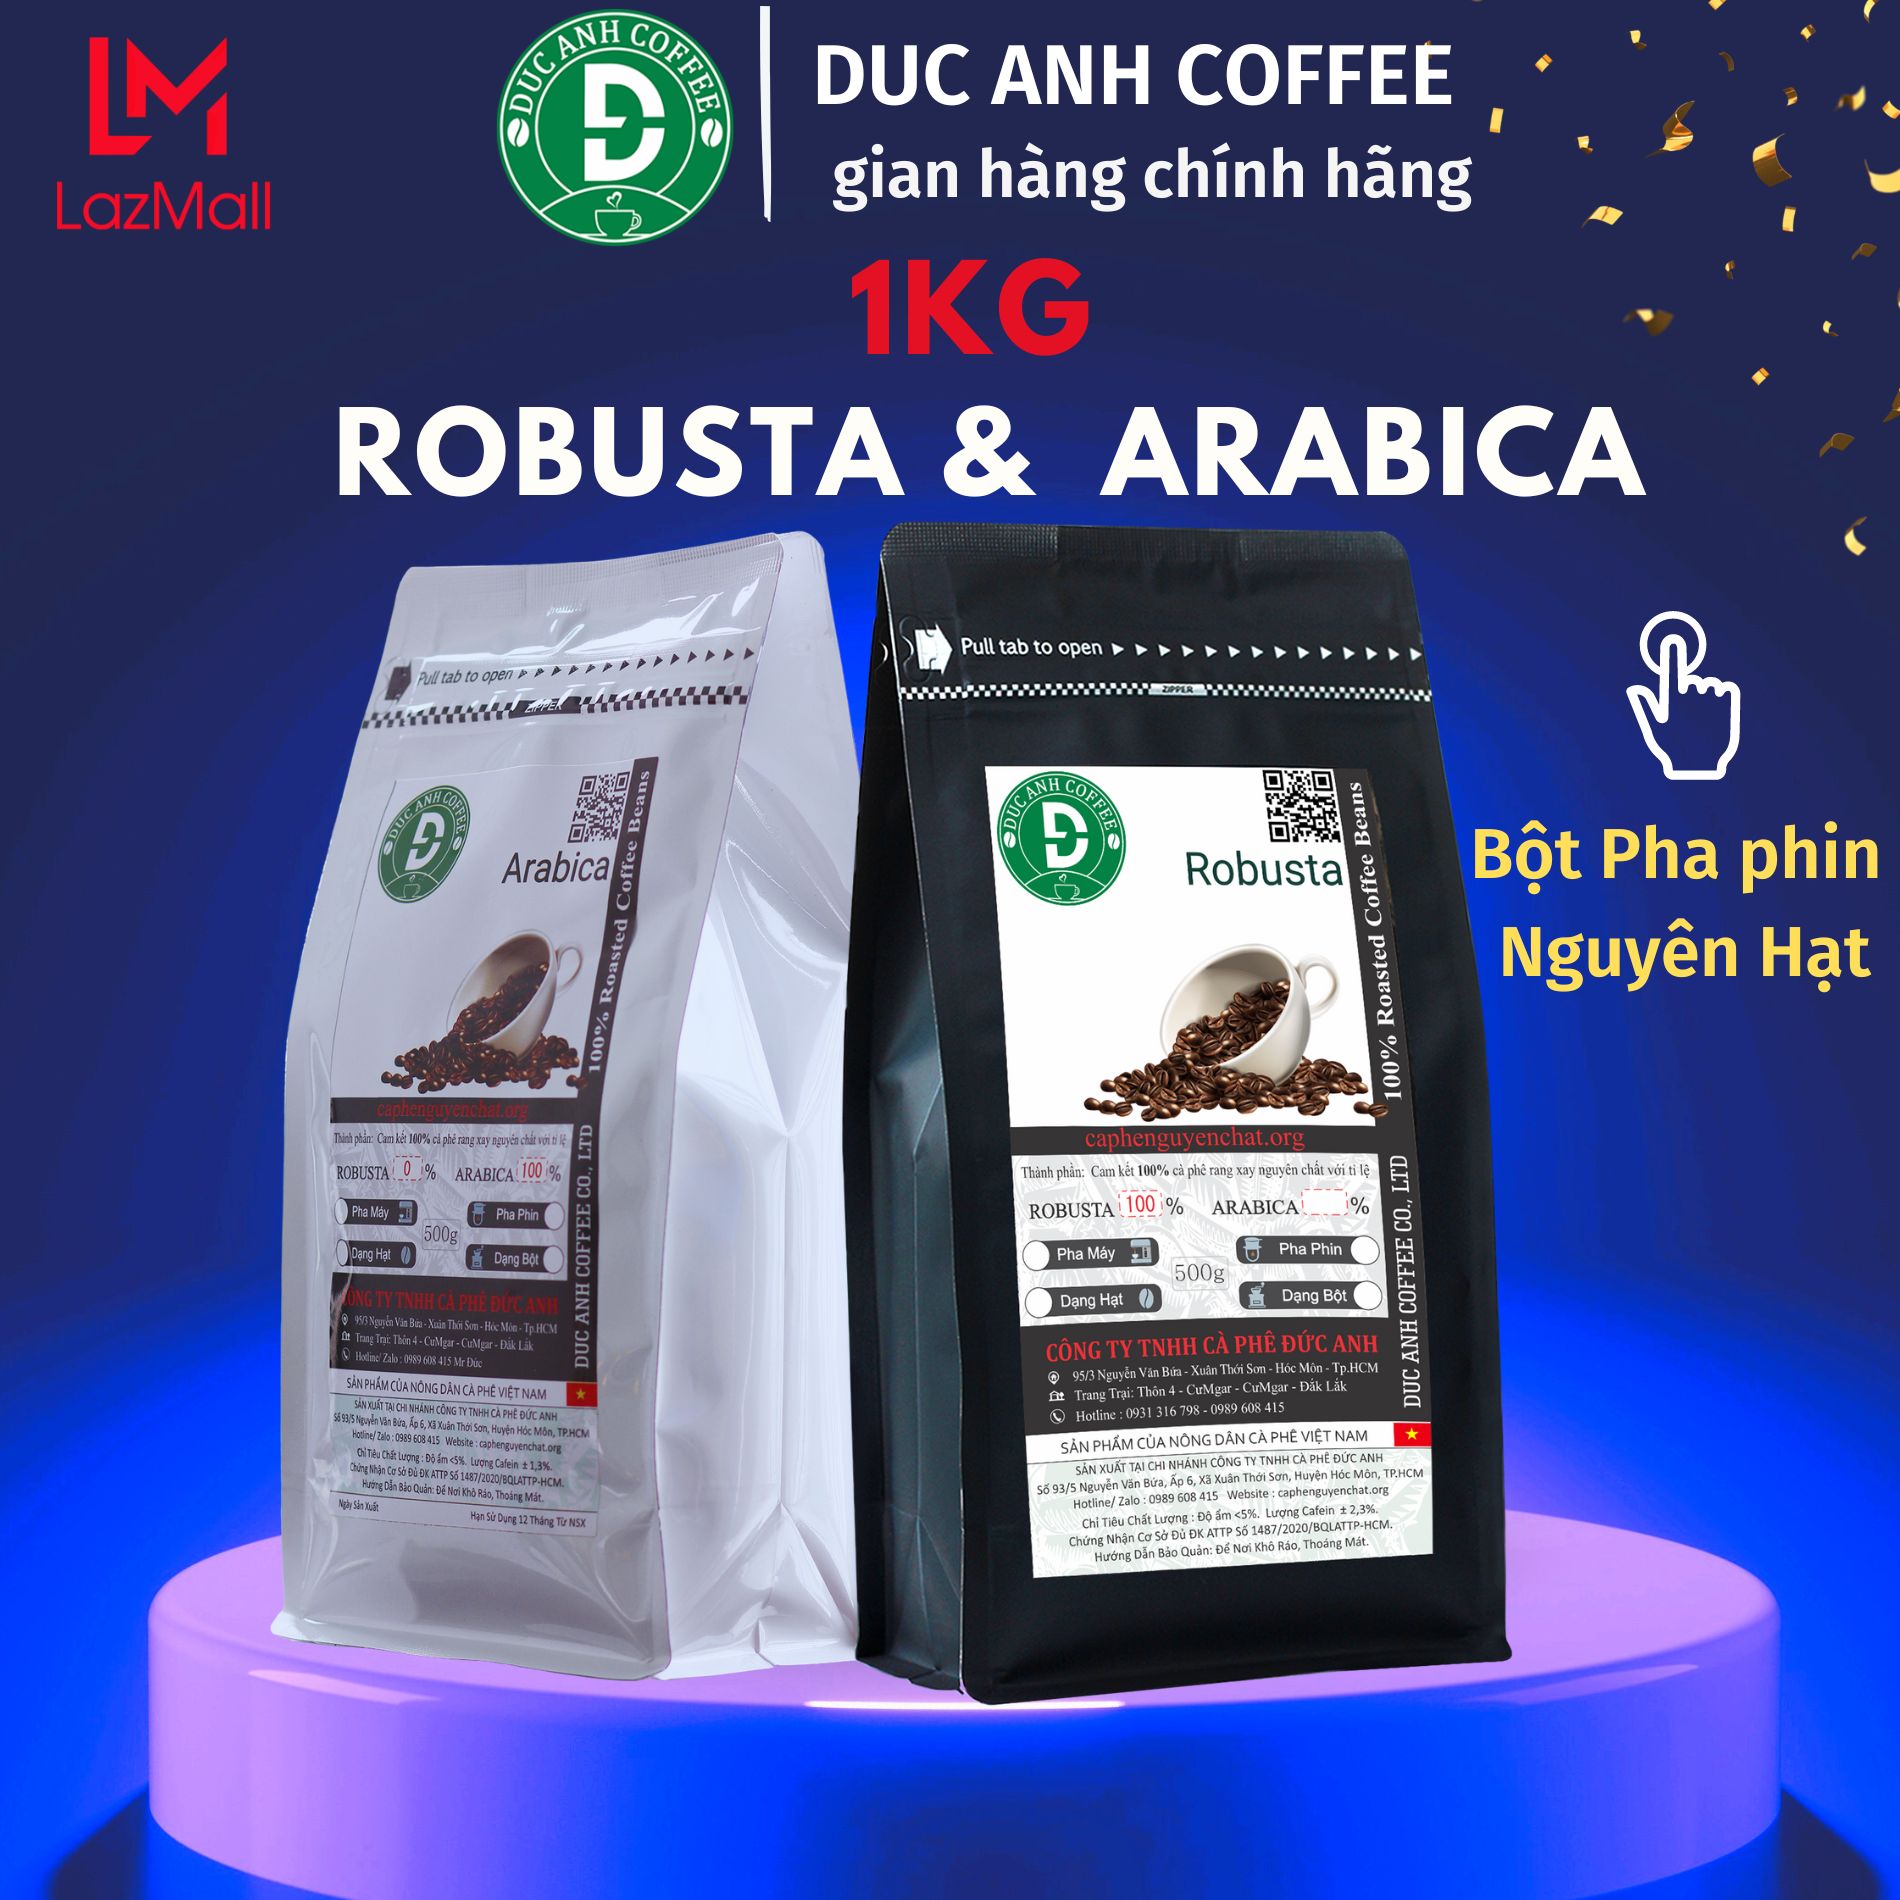 1kg cà phê Robusta và Arabica rang mộc DUC ANH COFFEE